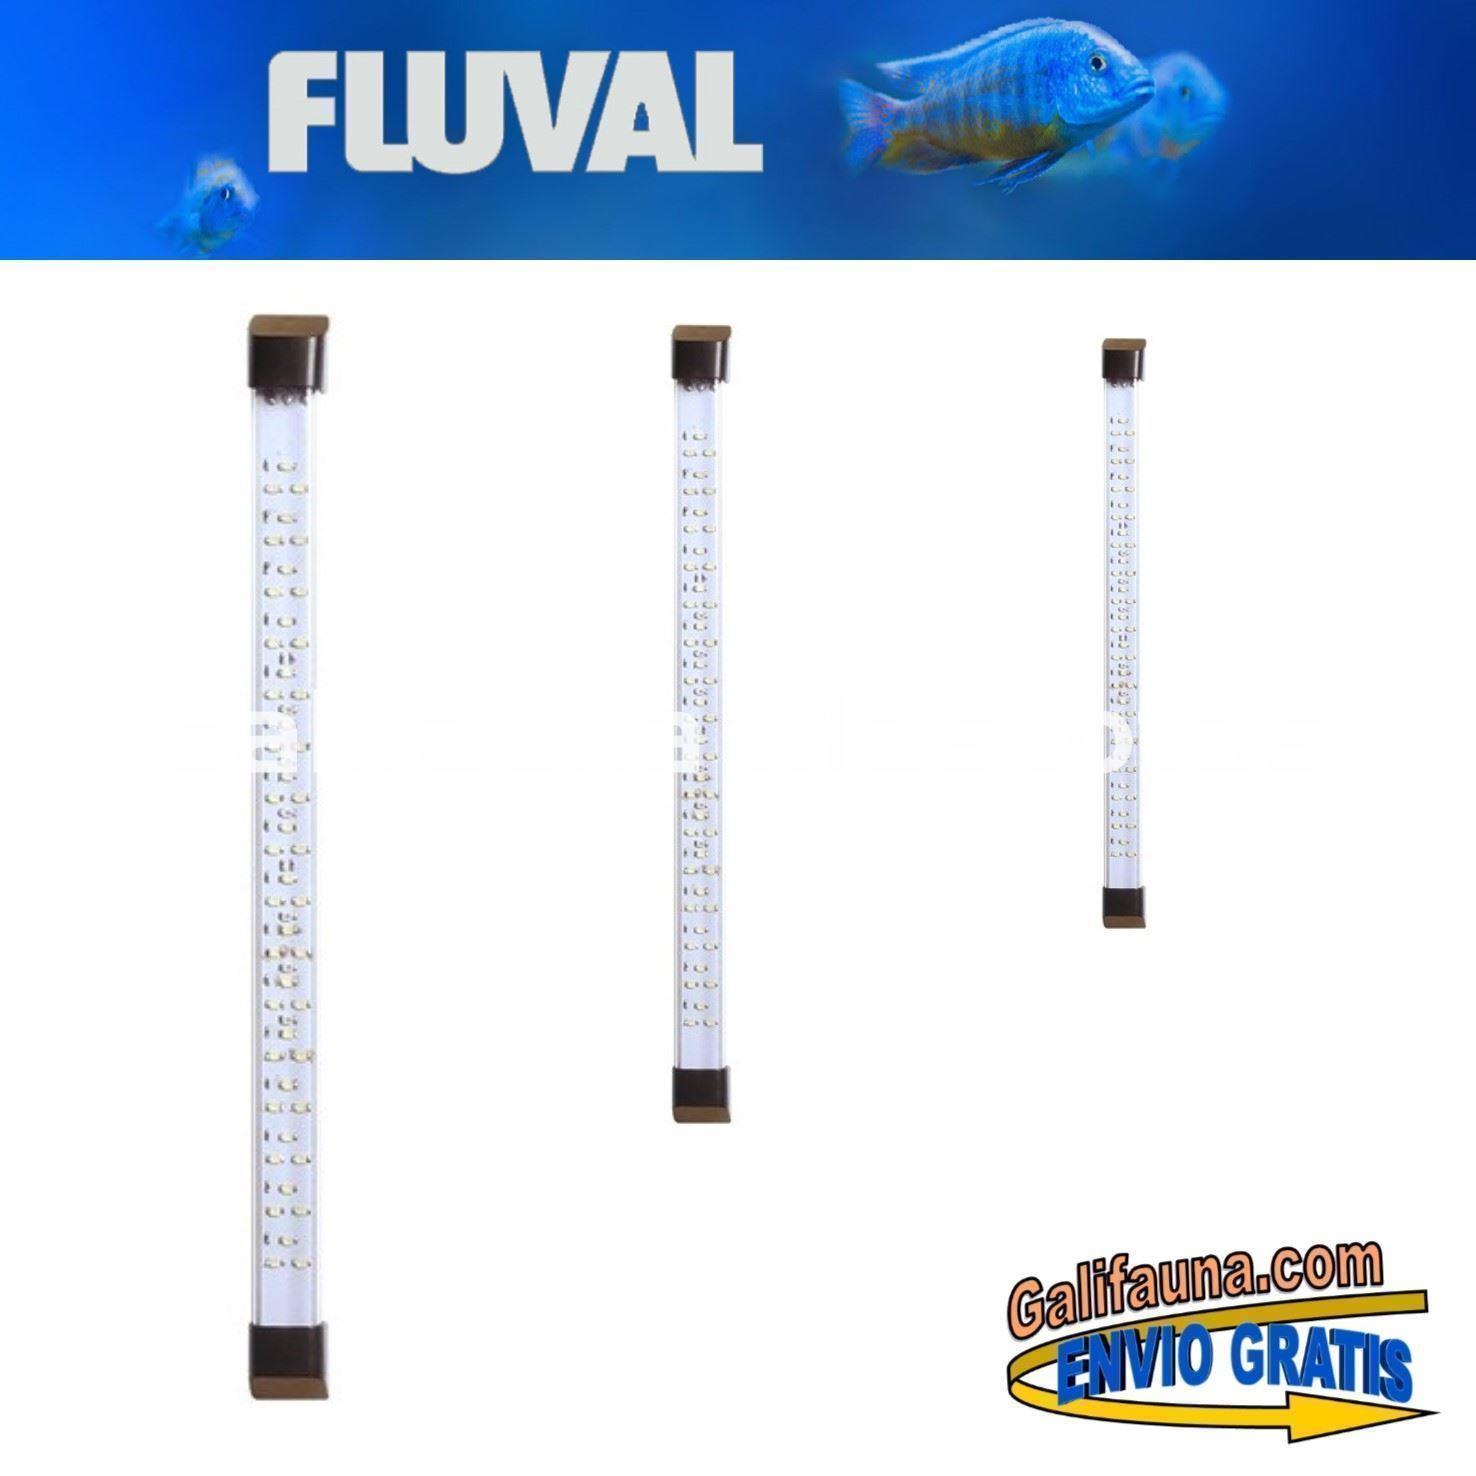 Repuesto Tira de led para la iluminación de los acuarios FLUVAL FLEX. - Imagen 1